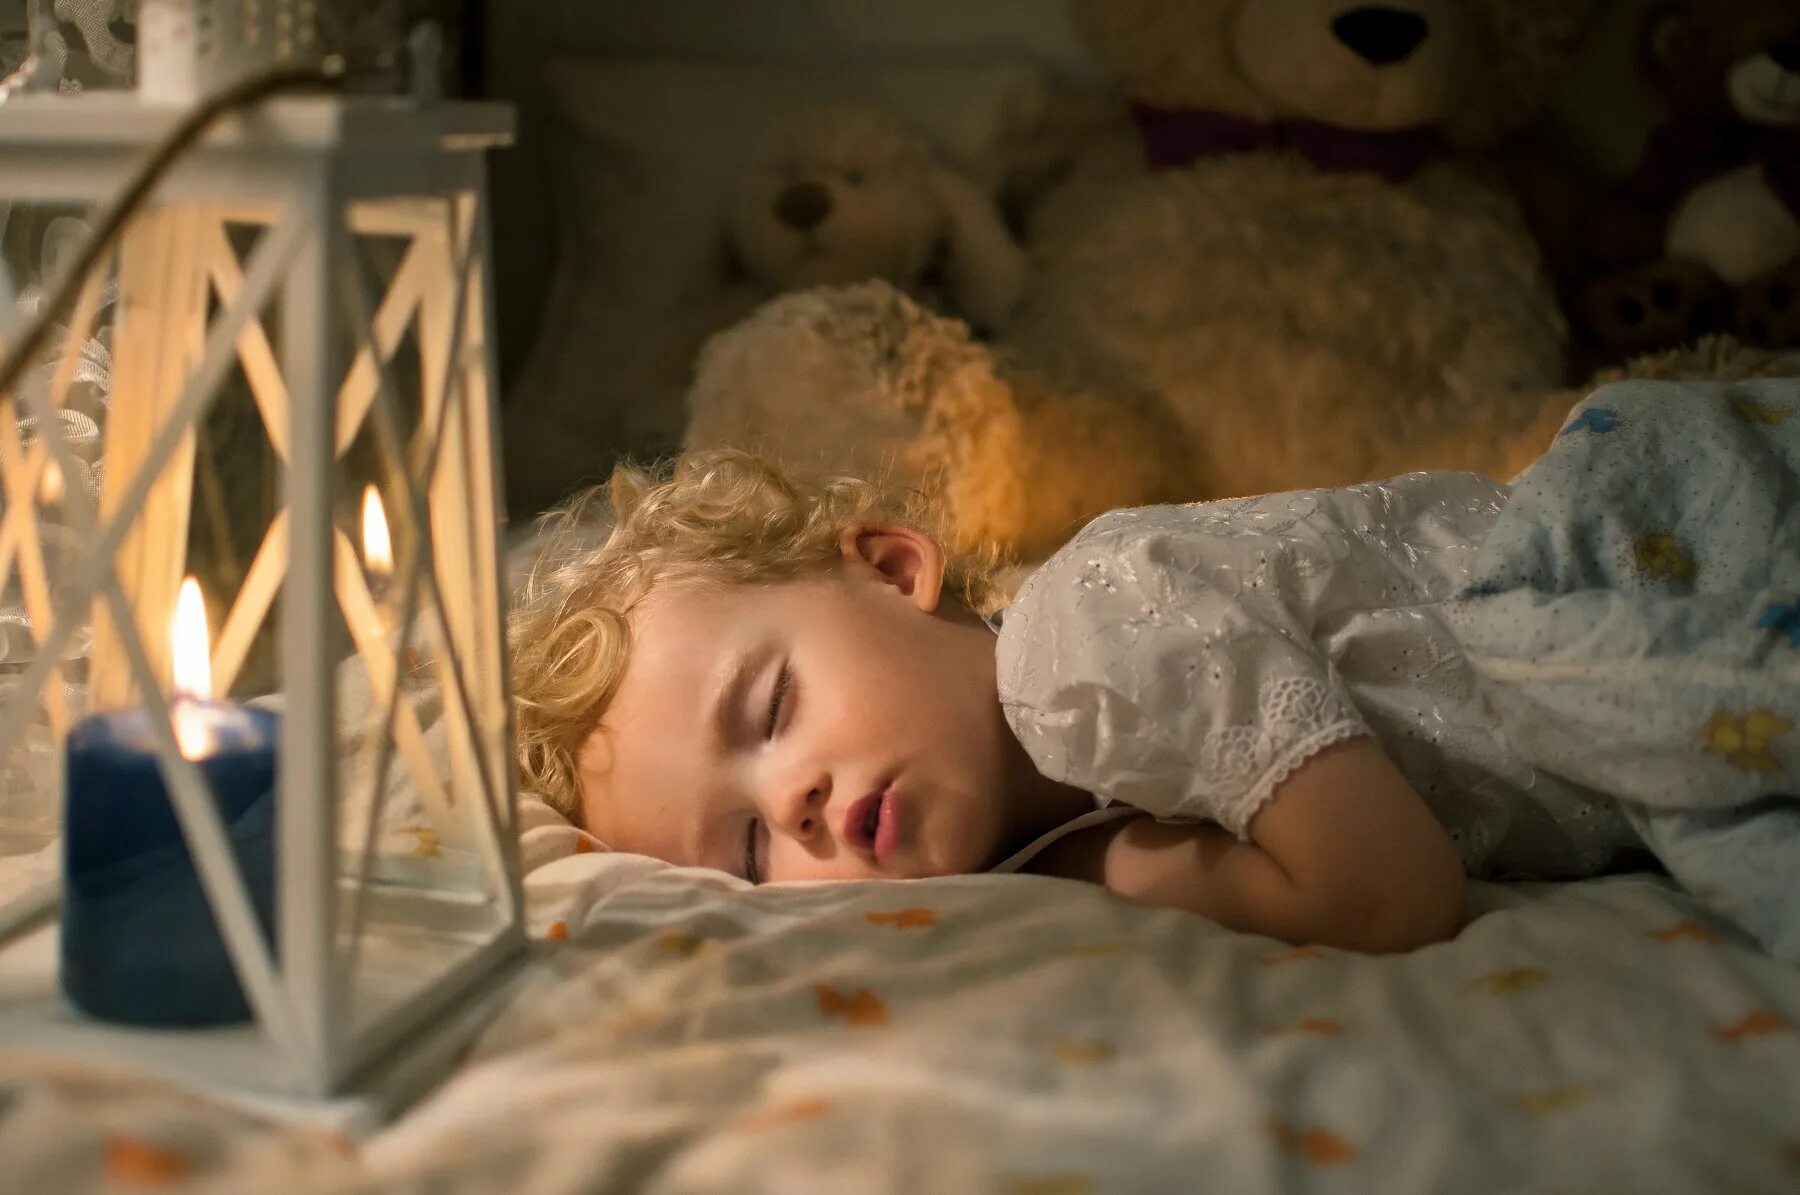 Читать на ночь. Чтение на ночь детям. Детские сны. Детки спят ночь. Ребенок спит ночью.